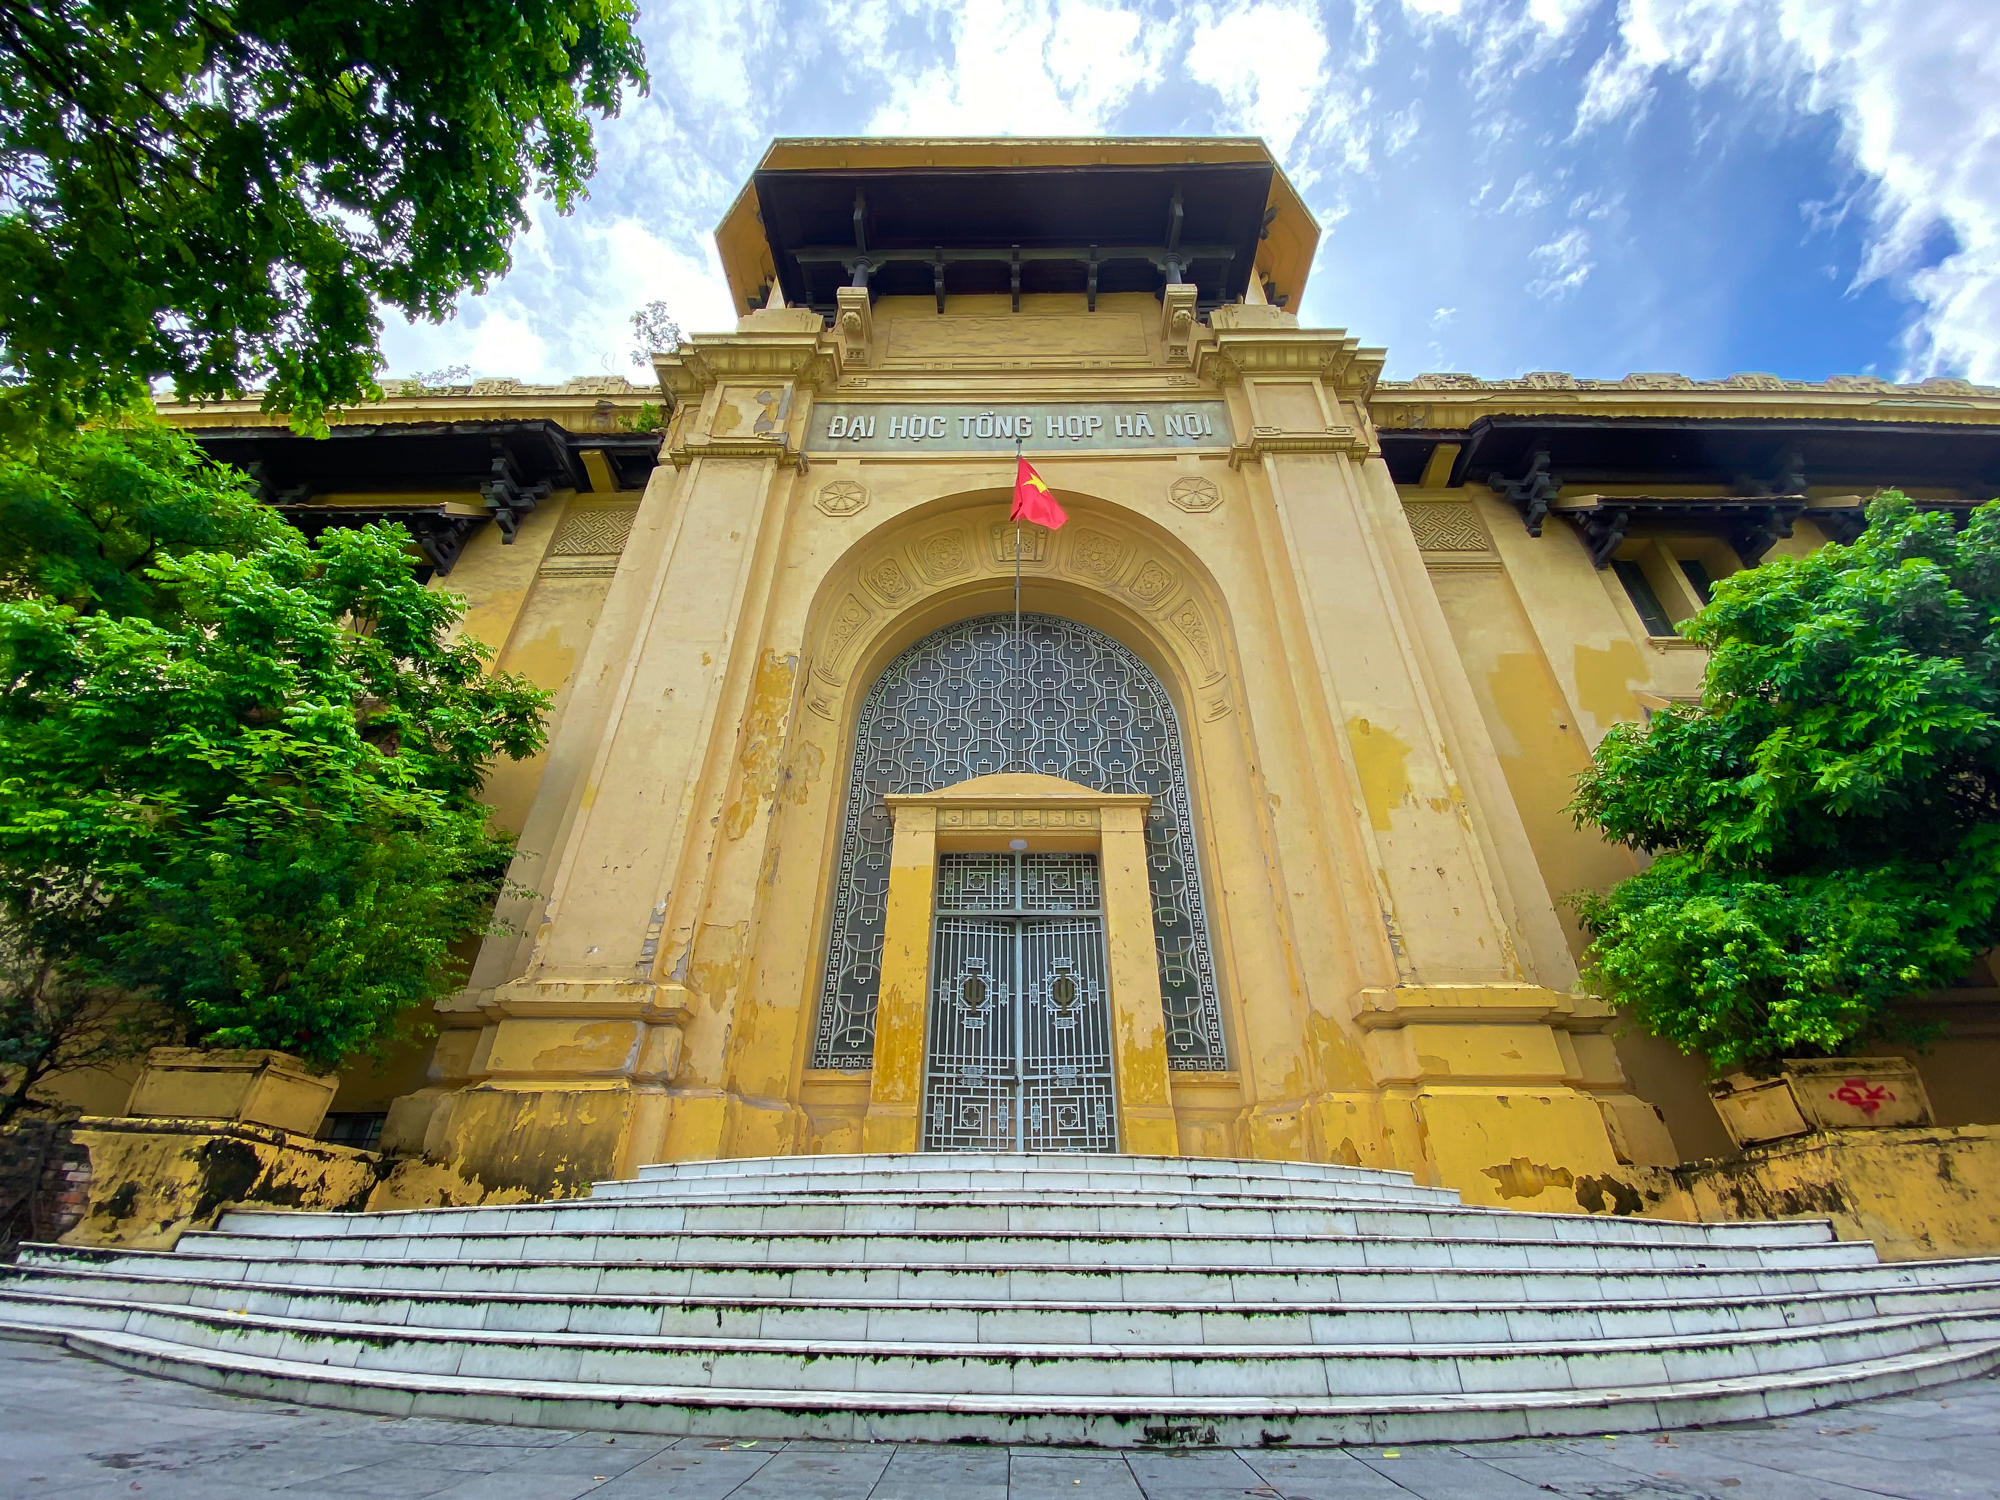 Trường đại học trăm tuổi, có hội trường đẹp như cung điện ở Hà Nội - Ảnh 1.